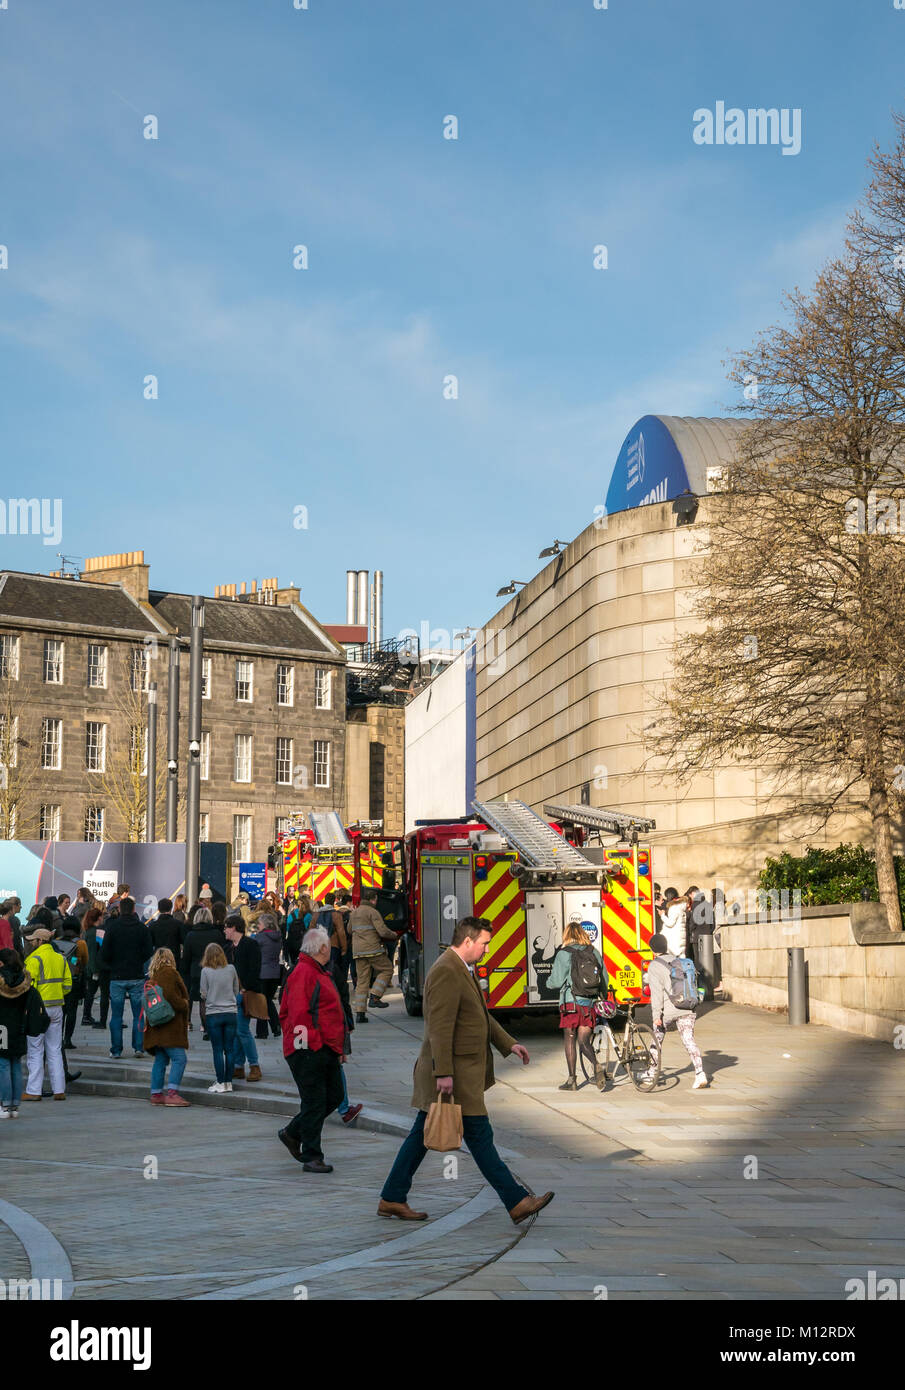 Les pompiers assistant à une fausse alarme à Potterow University of Edinburgh Students Association, Bisto Square, Edinburgh, Écosse, Royaume-Uni Banque D'Images